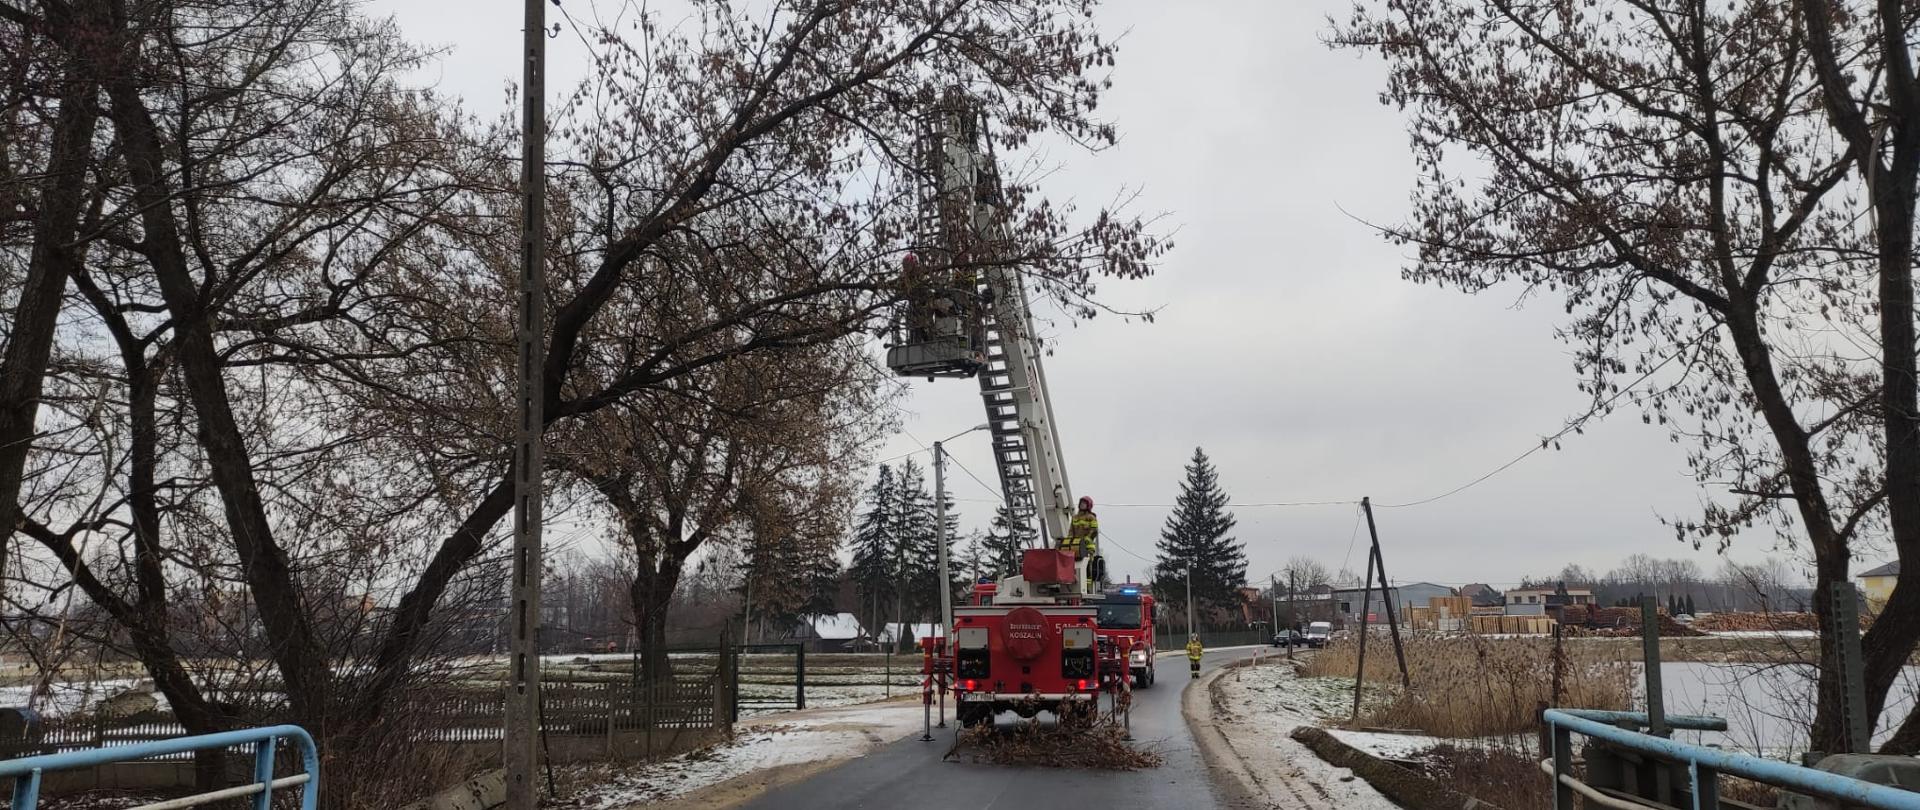 Strażacy usuwają drzewo oparte o linie energetyczne przy użyciu podnośnika koszowego. Pojazd rozstawiony na drodze.